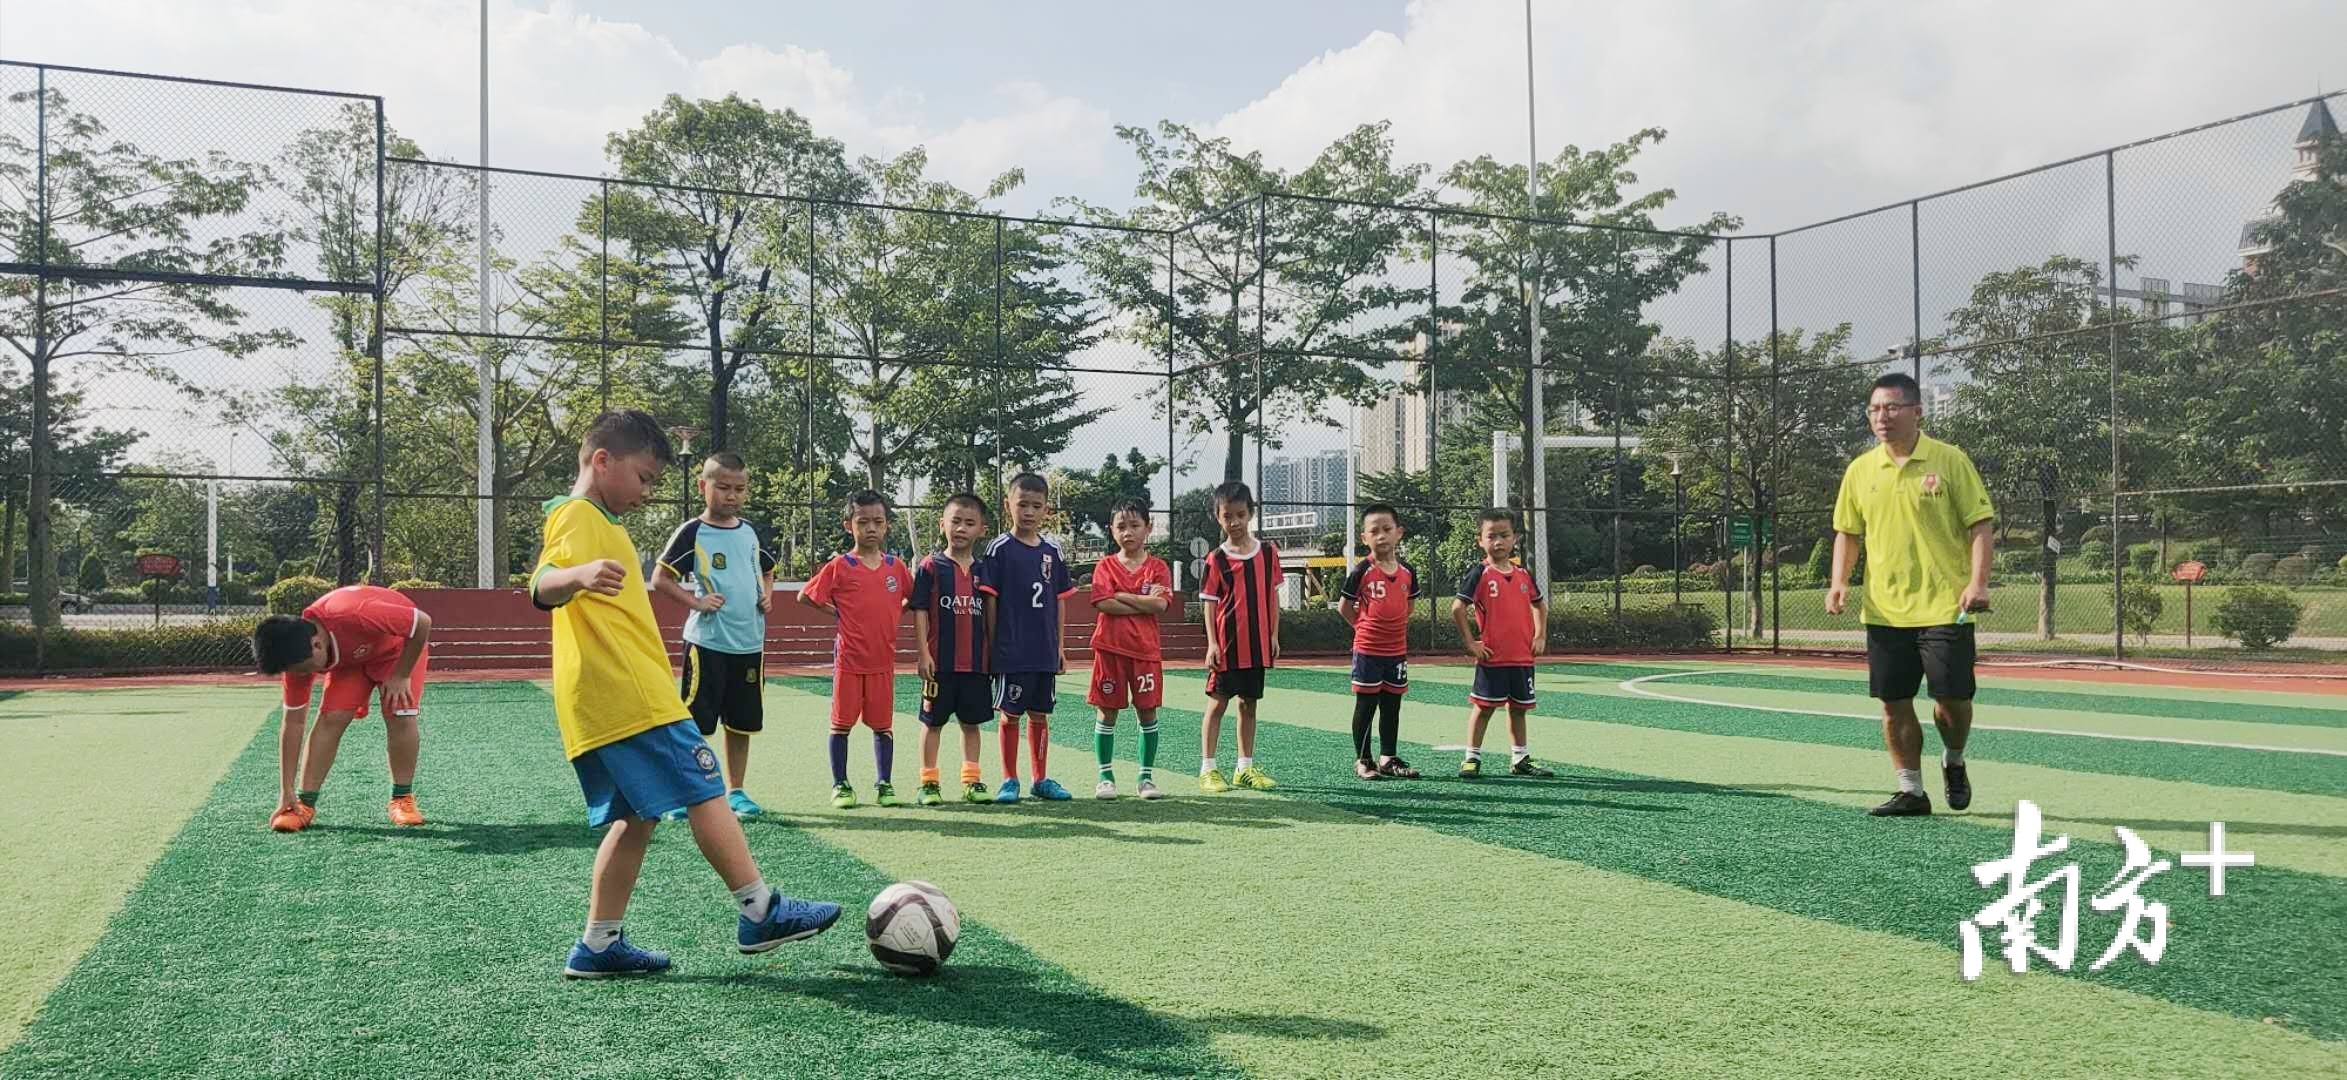 云东海街道举行青少年足球培训。